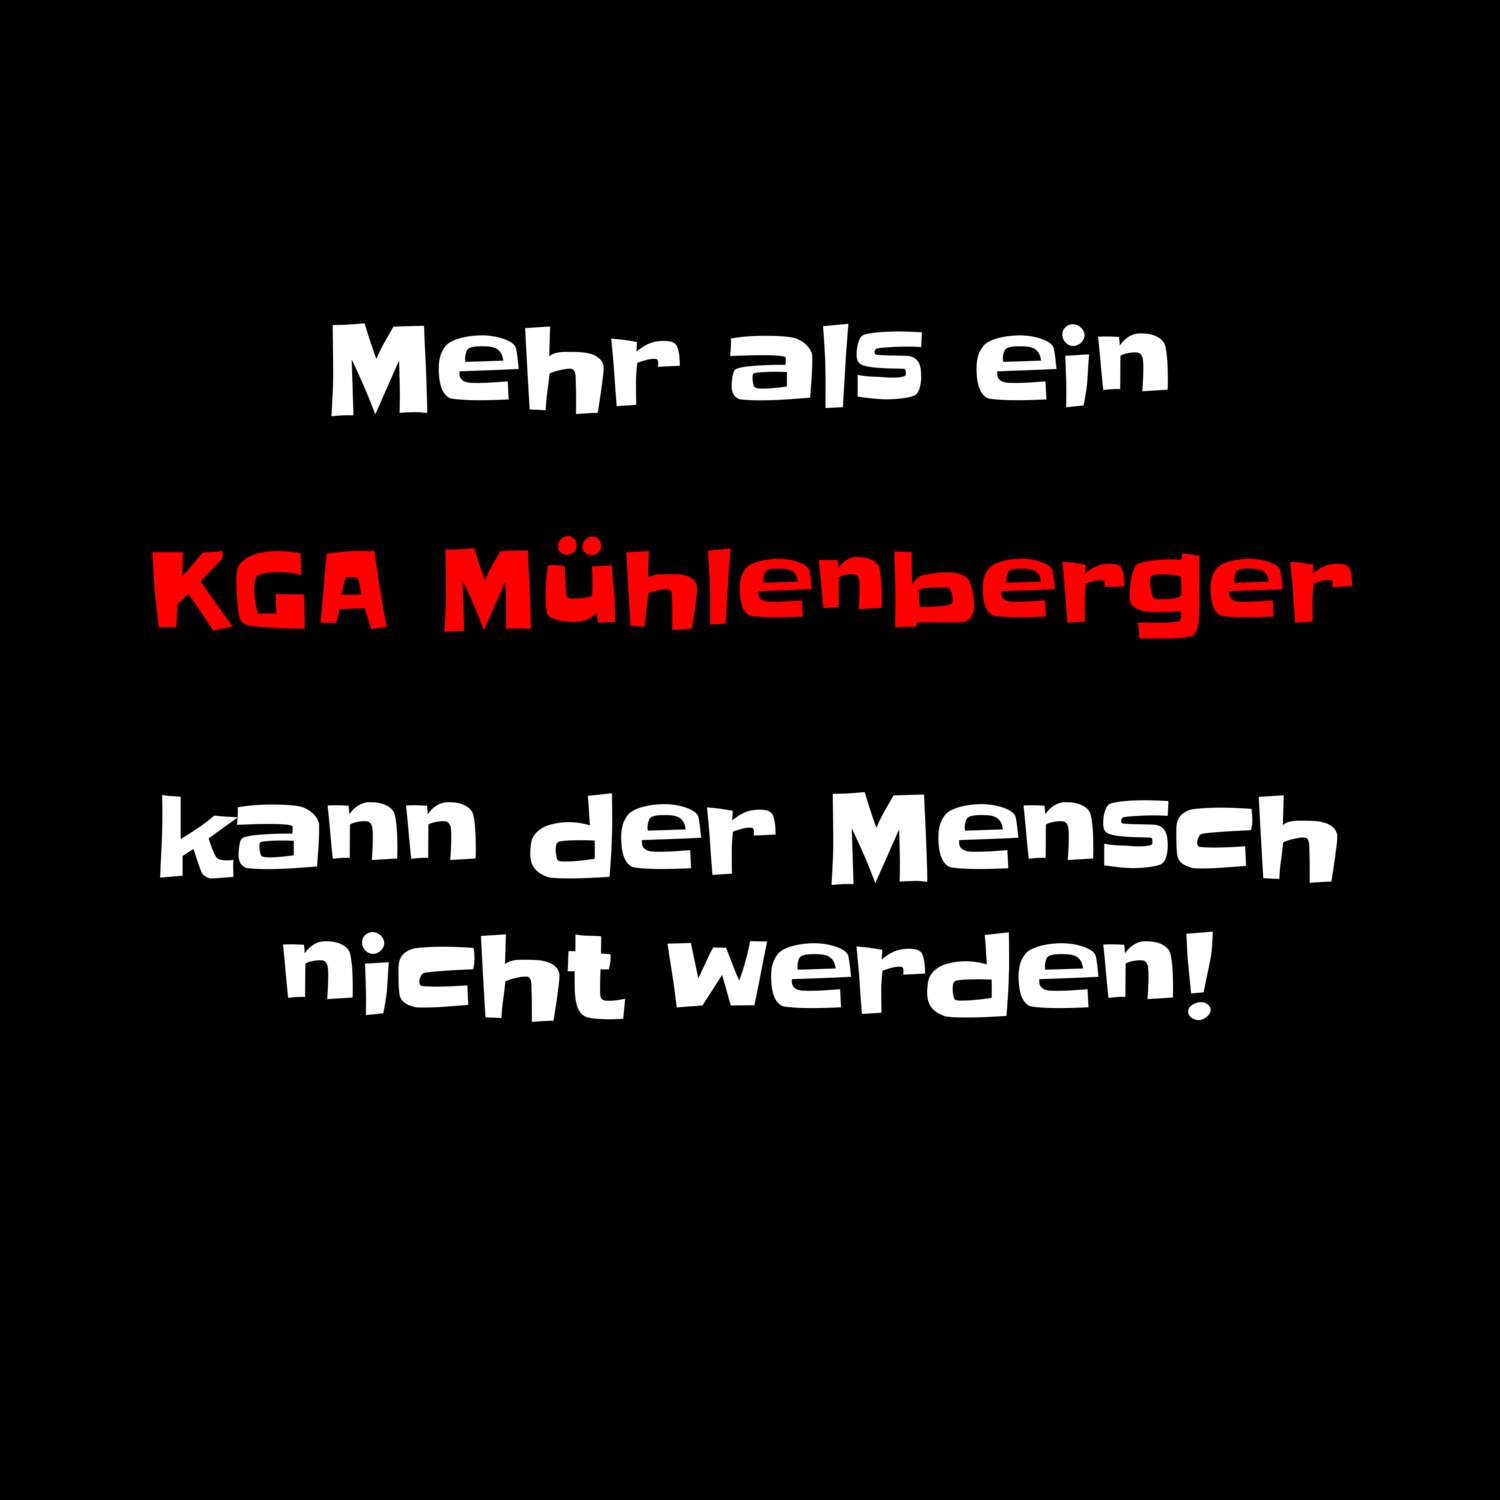 KGA Mühlenberg T-Shirt »Mehr als ein«